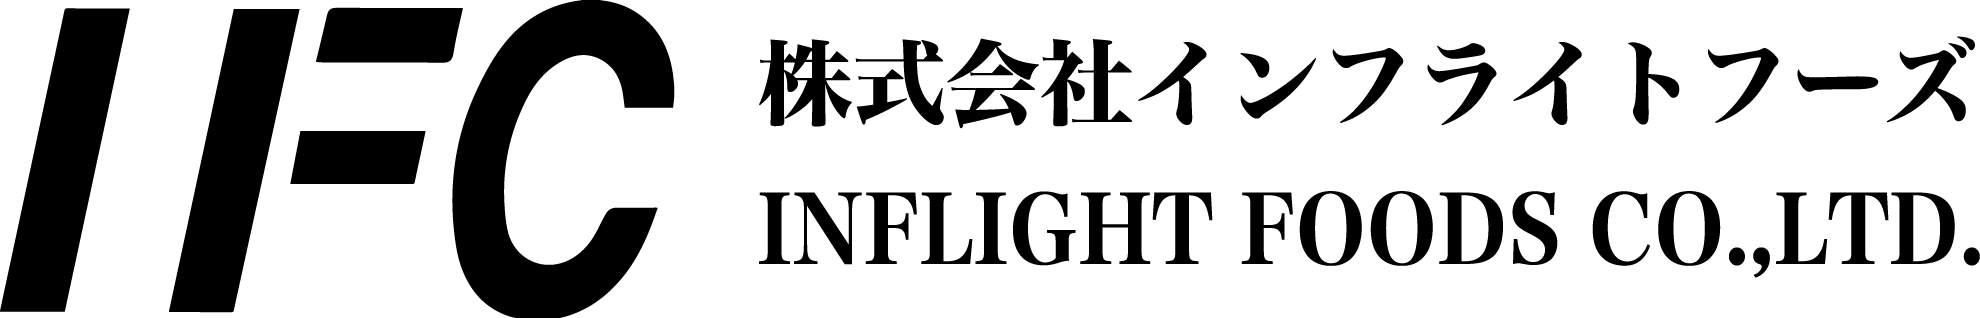 株式会社 インフライトフーズ ロゴ